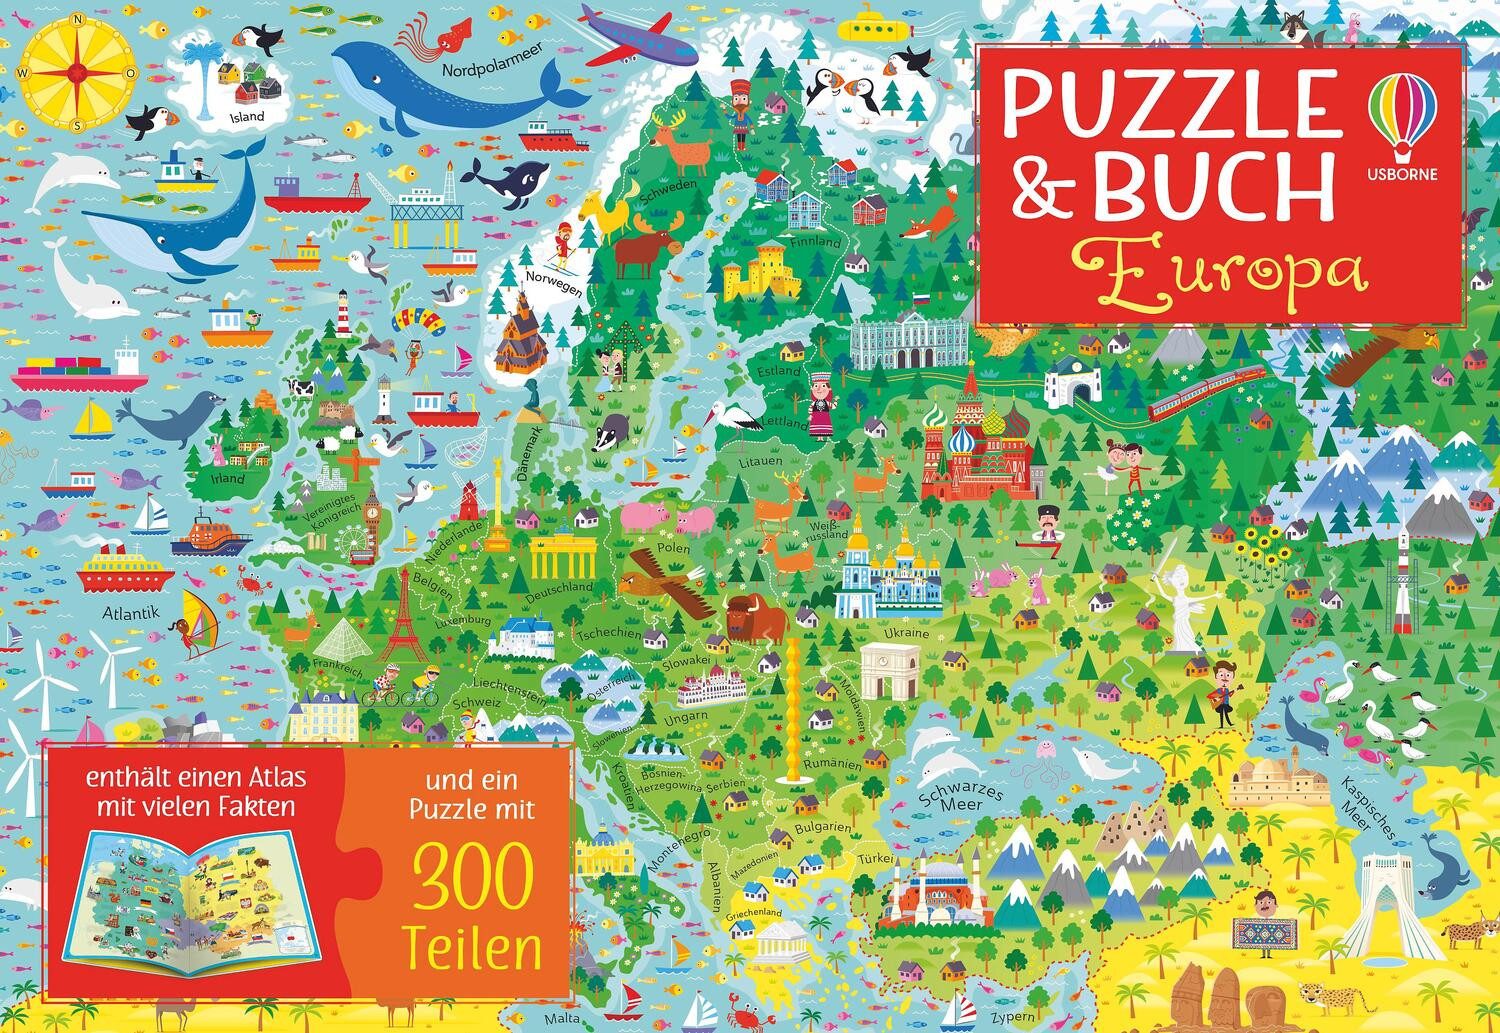 Usborne Verlag Puzzle Puzzle & Buch: Europa, 300 Puzzleteile